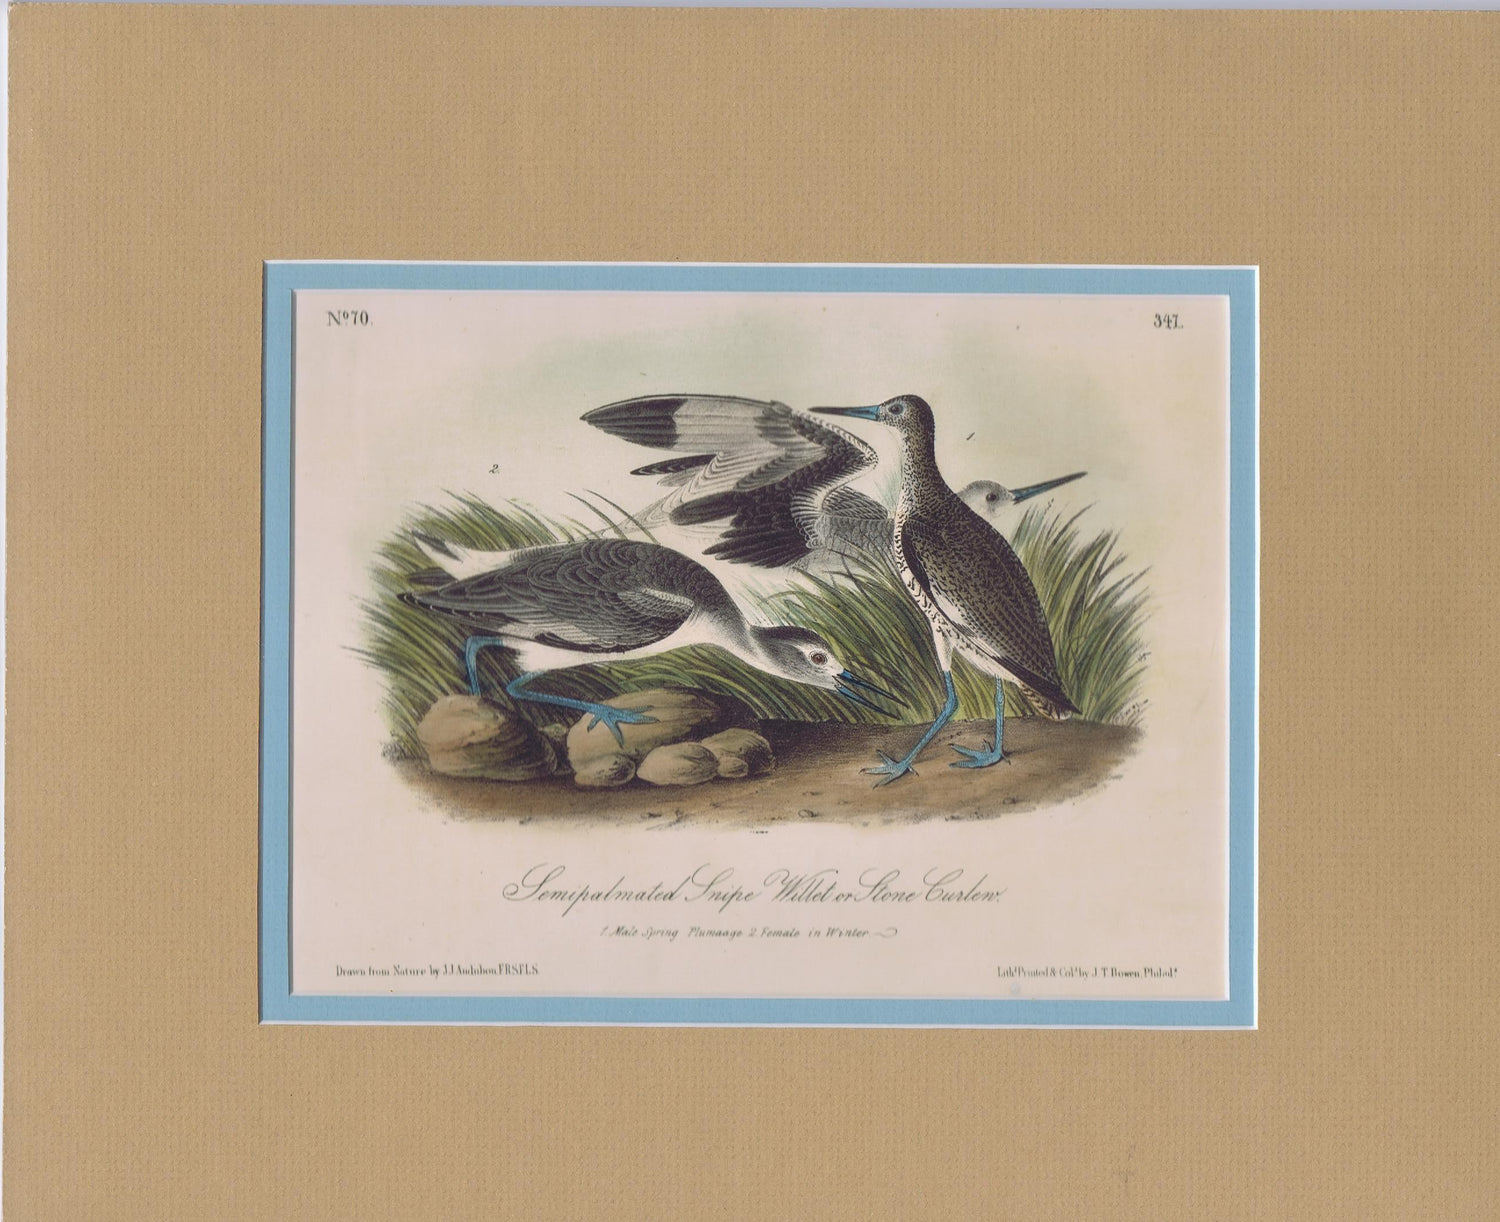 Audubon Original Octavo Matted, Semipalmated Snipe, plate 347